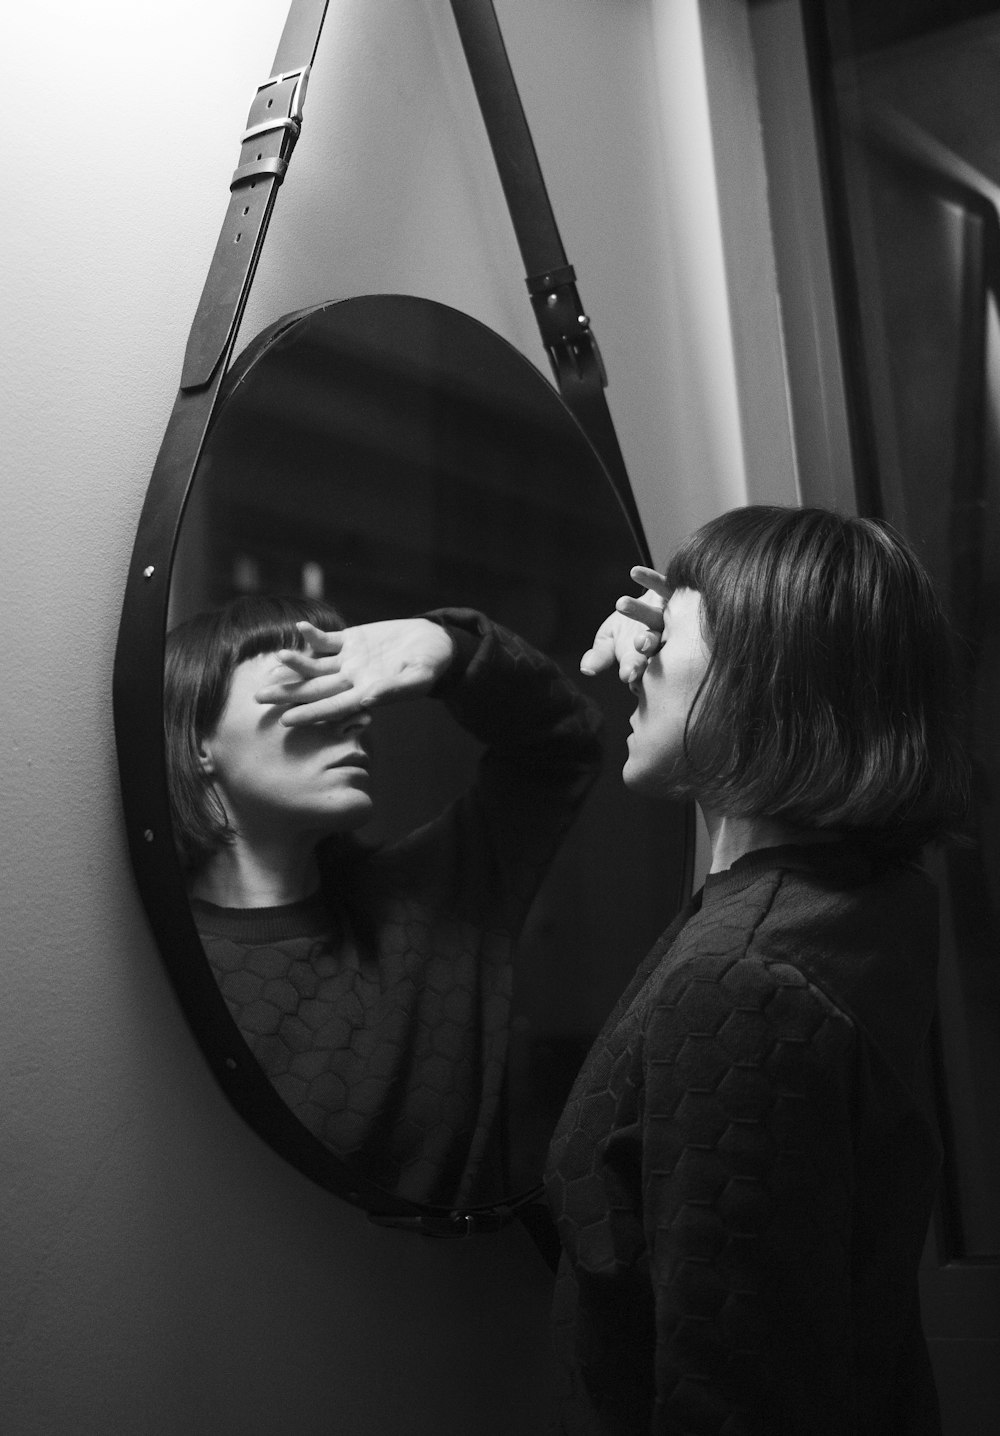 鏡の前に立つ黒い長袖シャツを着た女性